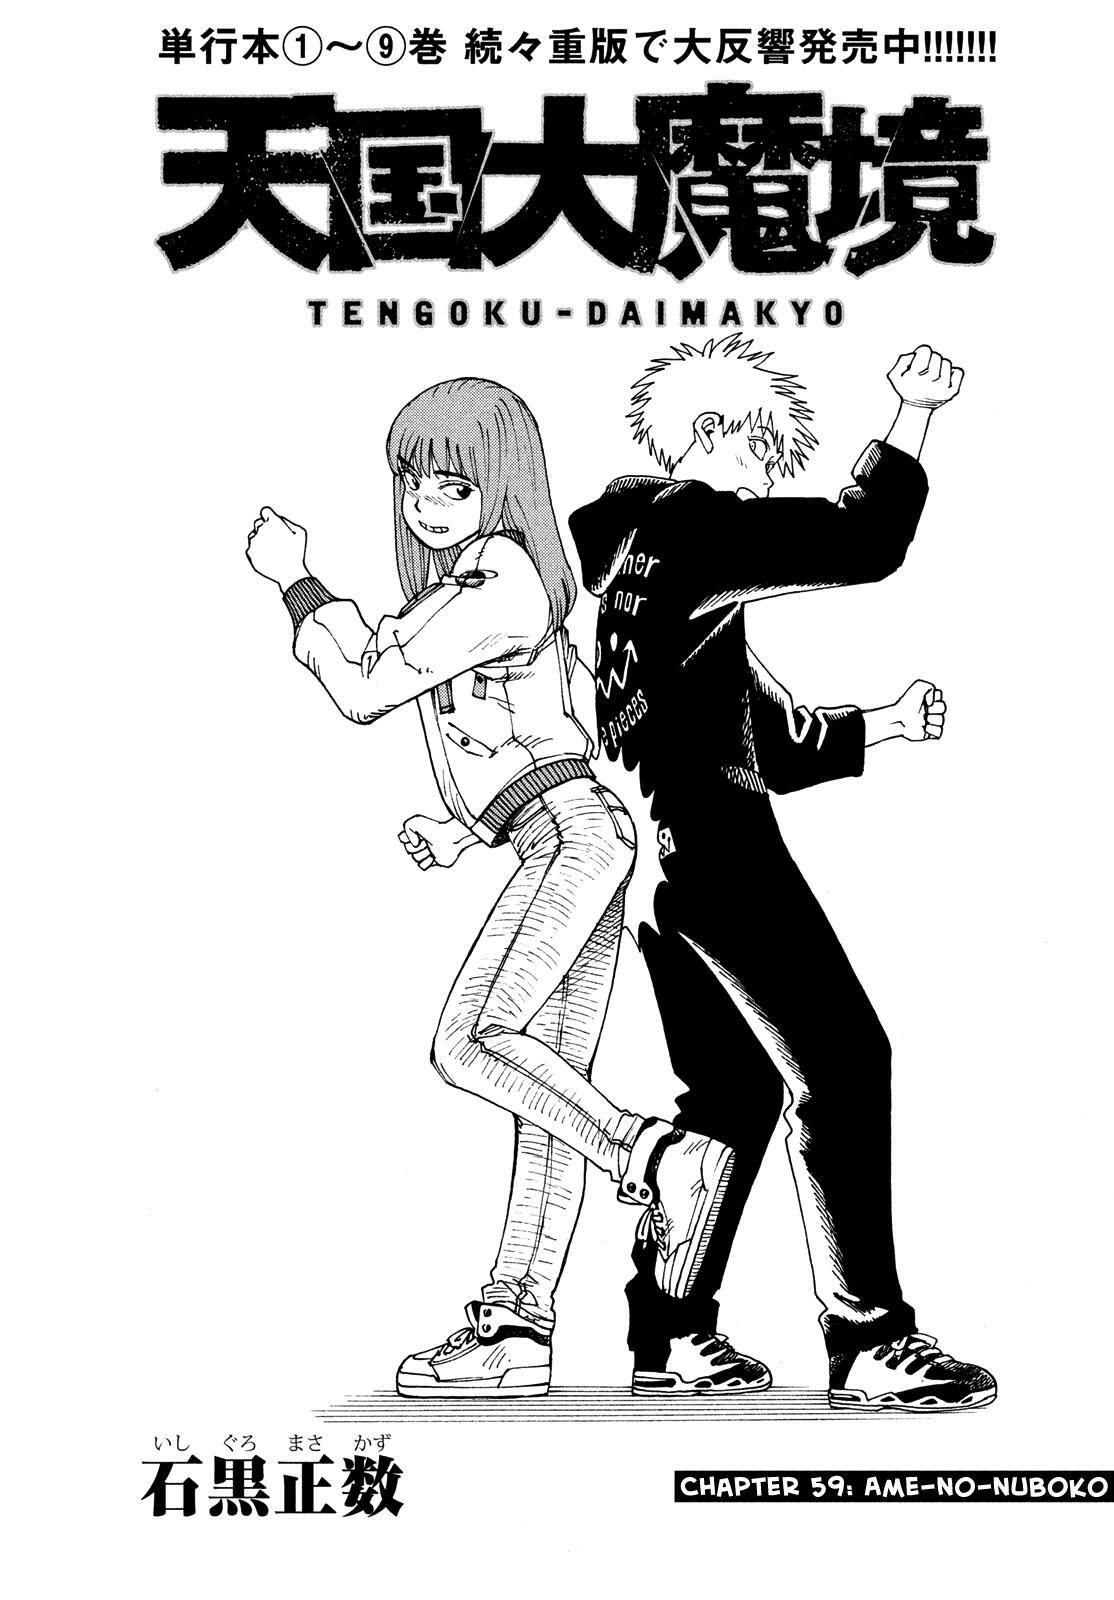 Read Tengoku Daimakyou Vol.9 Chapter 55: Anjulous ➁ on Mangakakalot